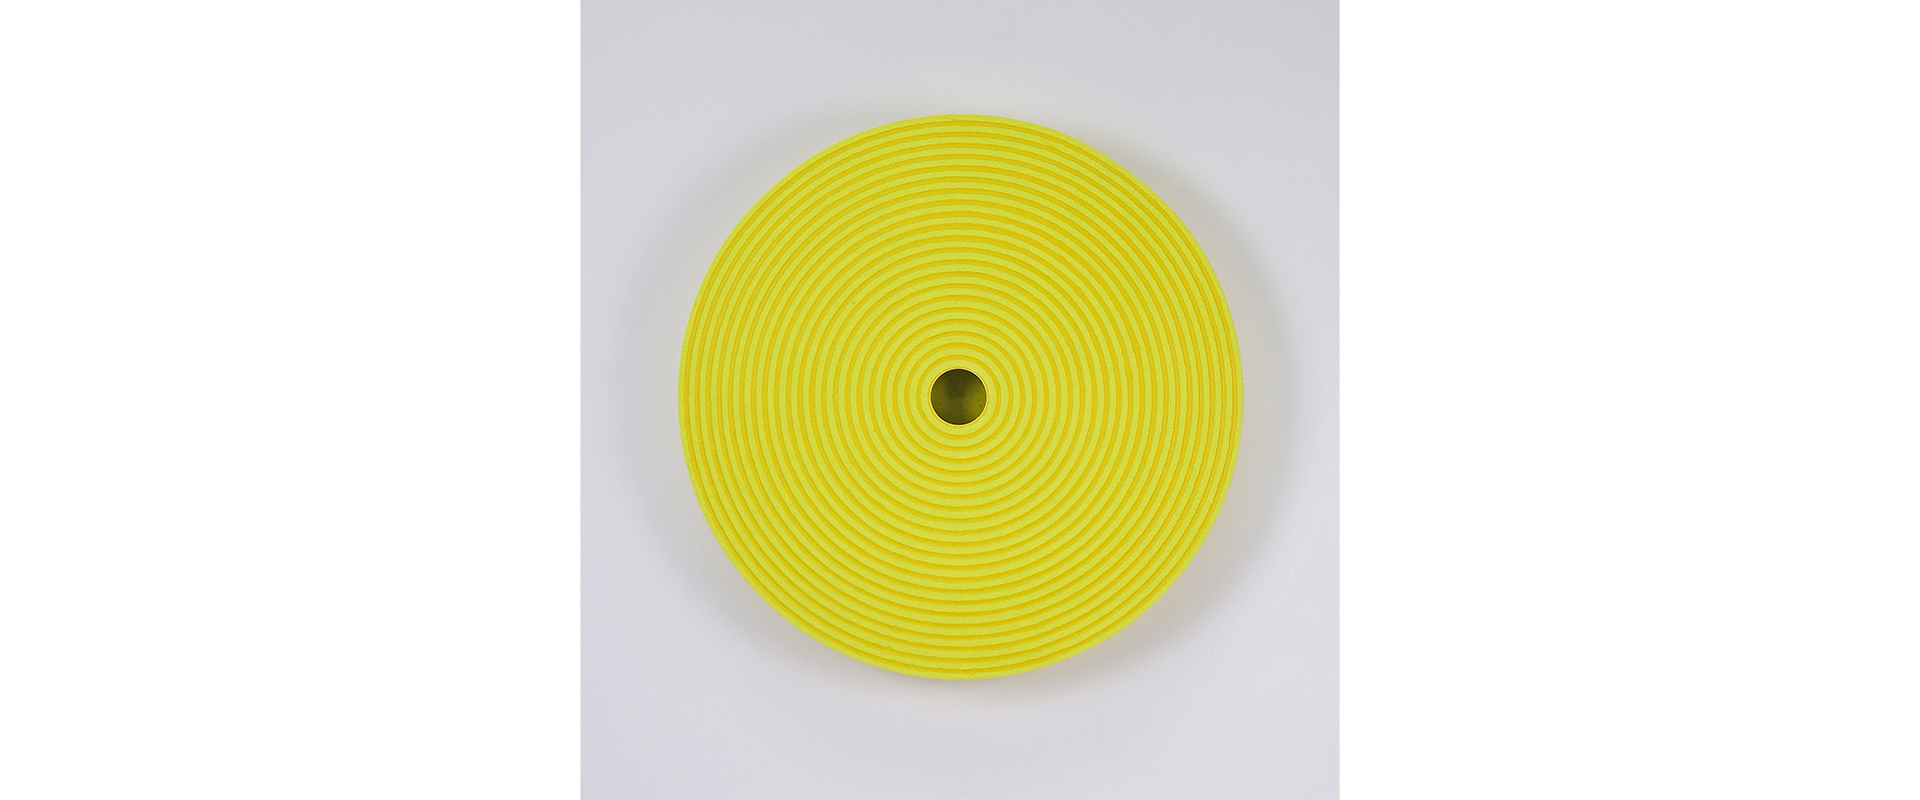 Reinhard Wöllmer, Struktur radial (leuchtgelb, gelb) – 2017, Papiermaché, eingefärbt, Acryl, Farbstift, D. 52 x 5,5 cm